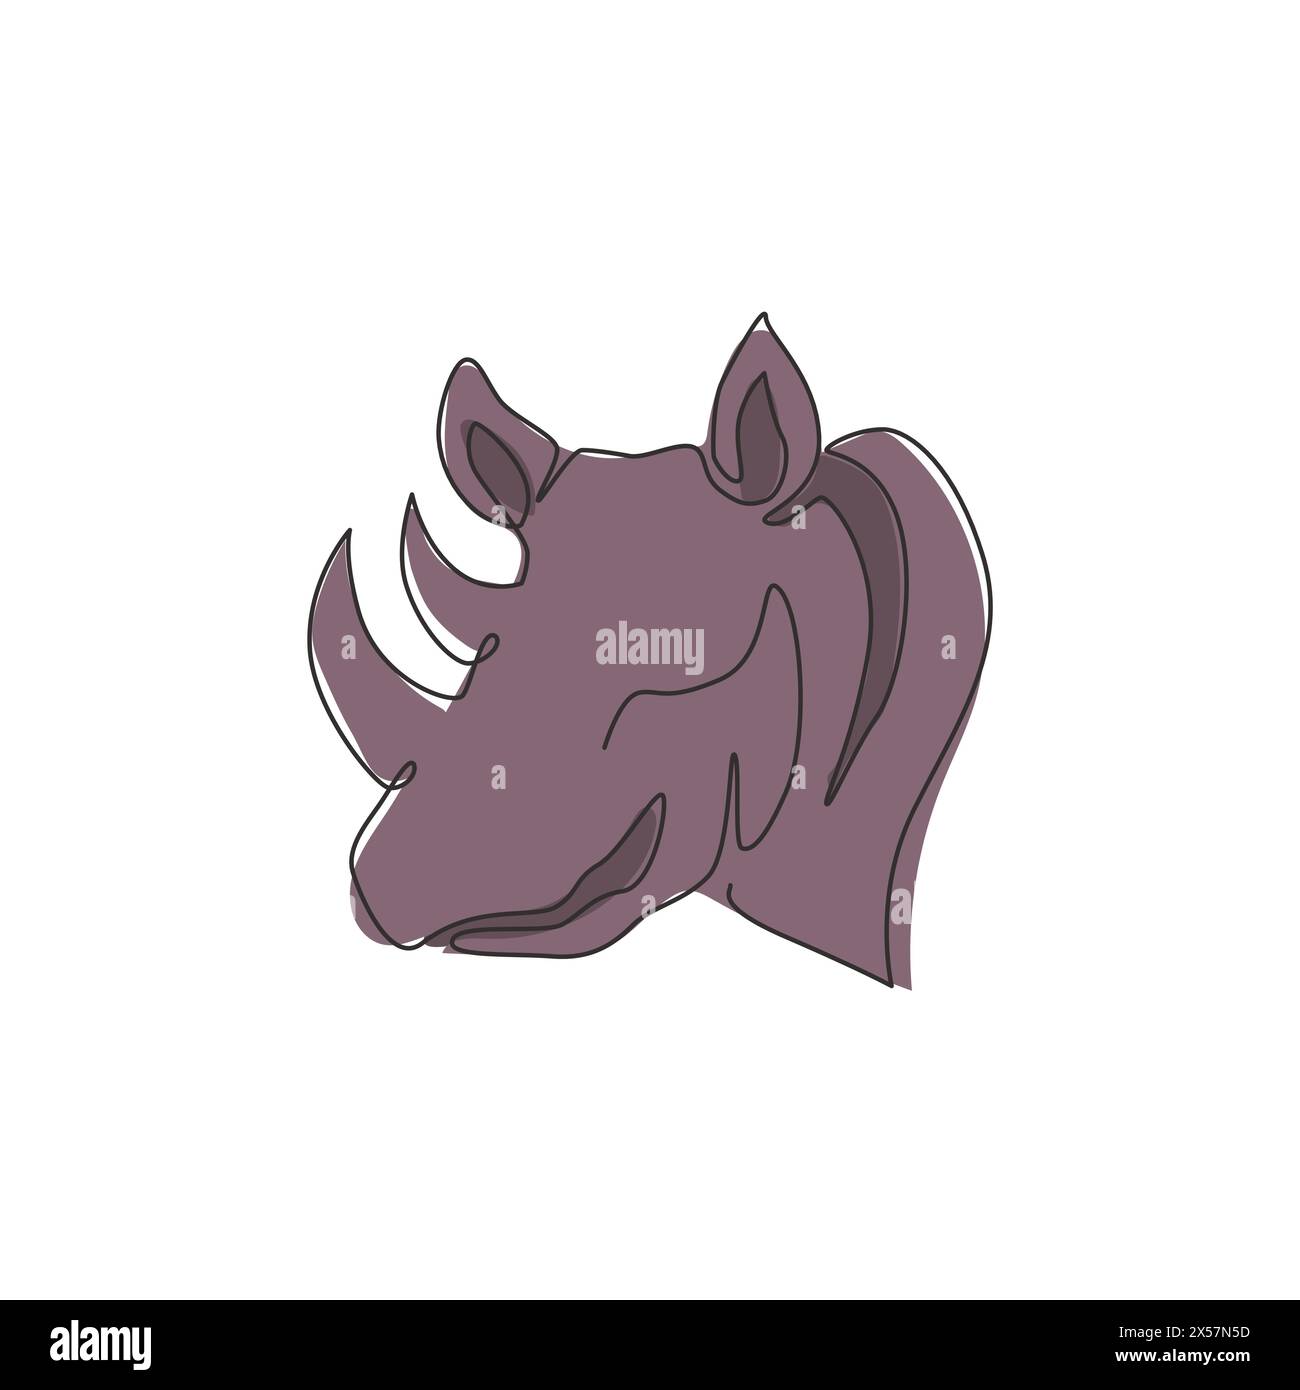 Un dessin d'une seule ligne d'une tête de rhinocéros forte pour l'identité du logo du parc national de conservation. Concept de mascotte d'animaux de rhinocéros africains pour les zoos nationaux Illustration de Vecteur